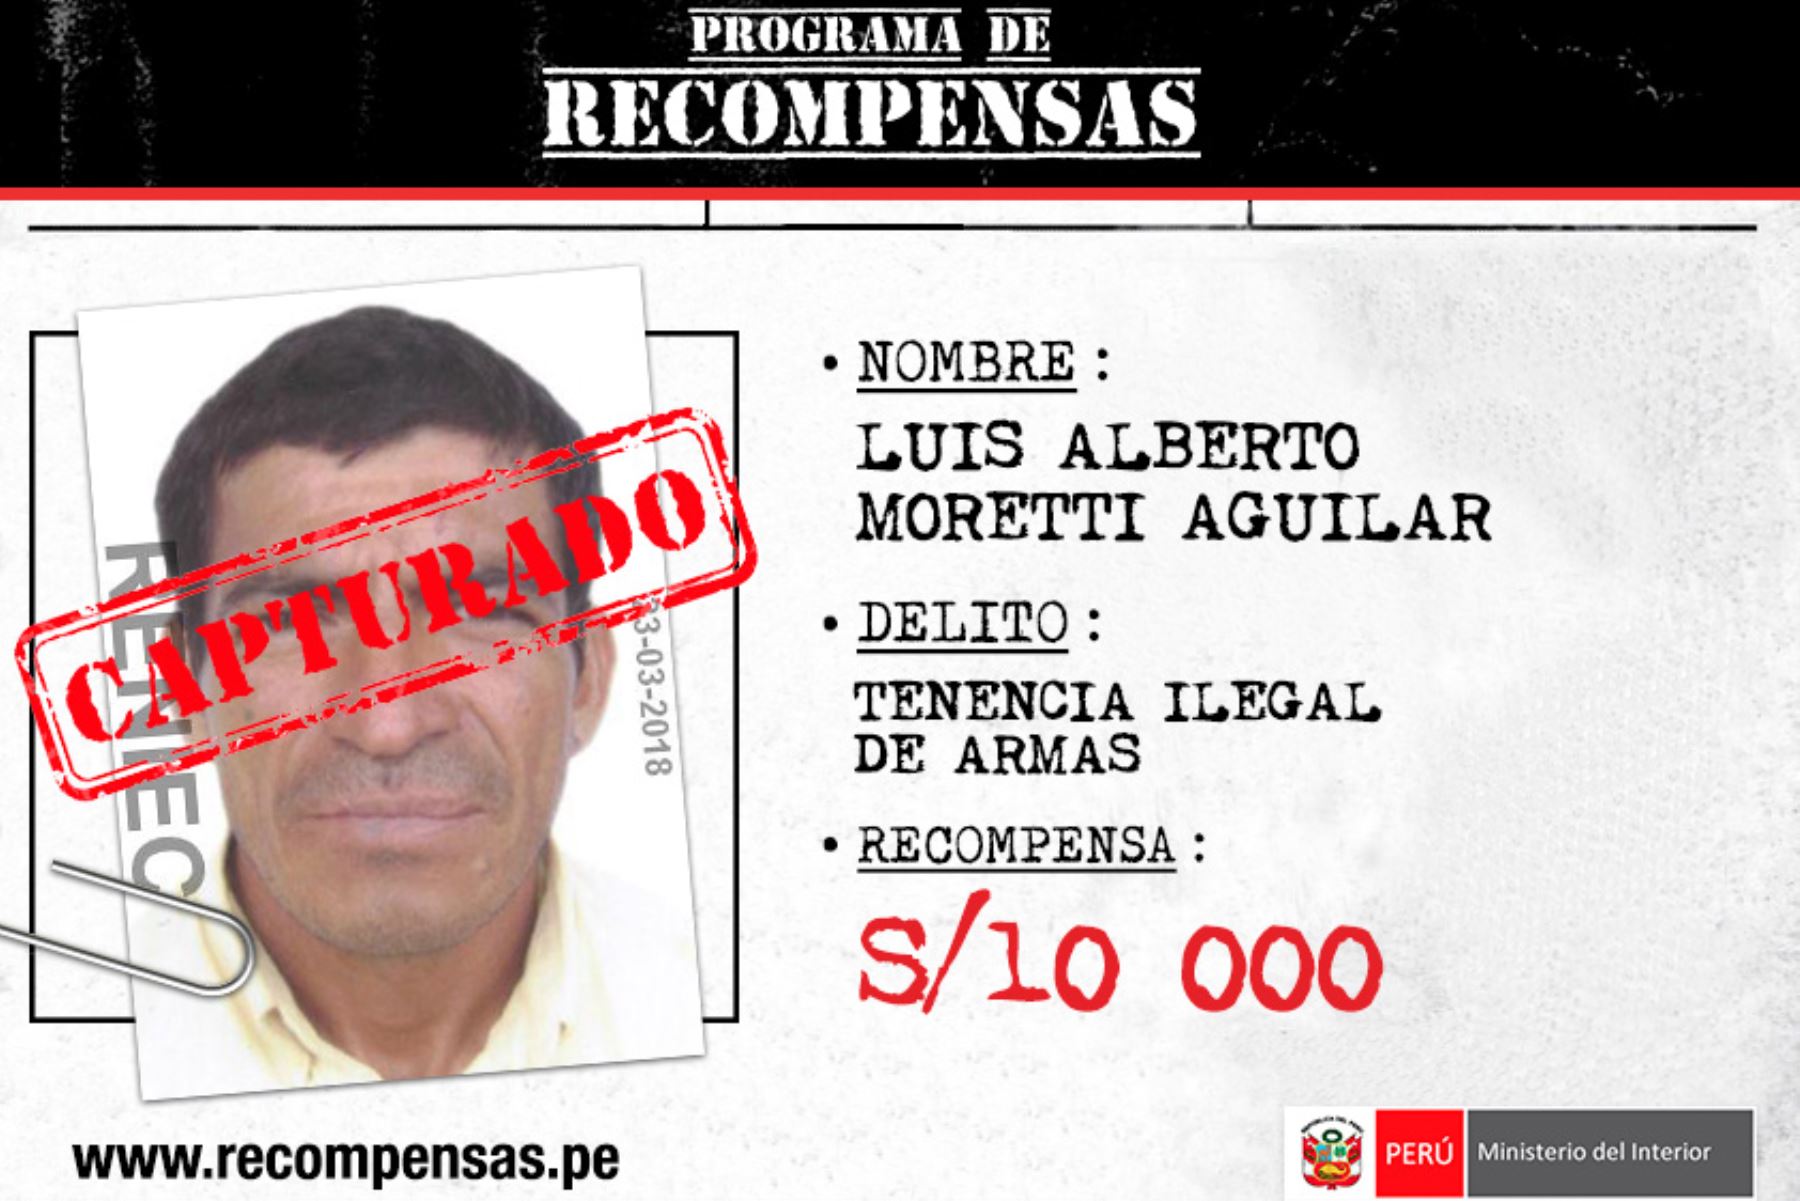 La Policía Nacional del Perú (PNP) detuvo hoy en la región Áncash a Luis Alberto Moretti Aguilar, de 45 años de edad, quien está incluido en el Programa de Recompensas Que Ellos se Cuiden del Ministerio del Interior (Mininter) por el delito de tenencia ilegal de armas.